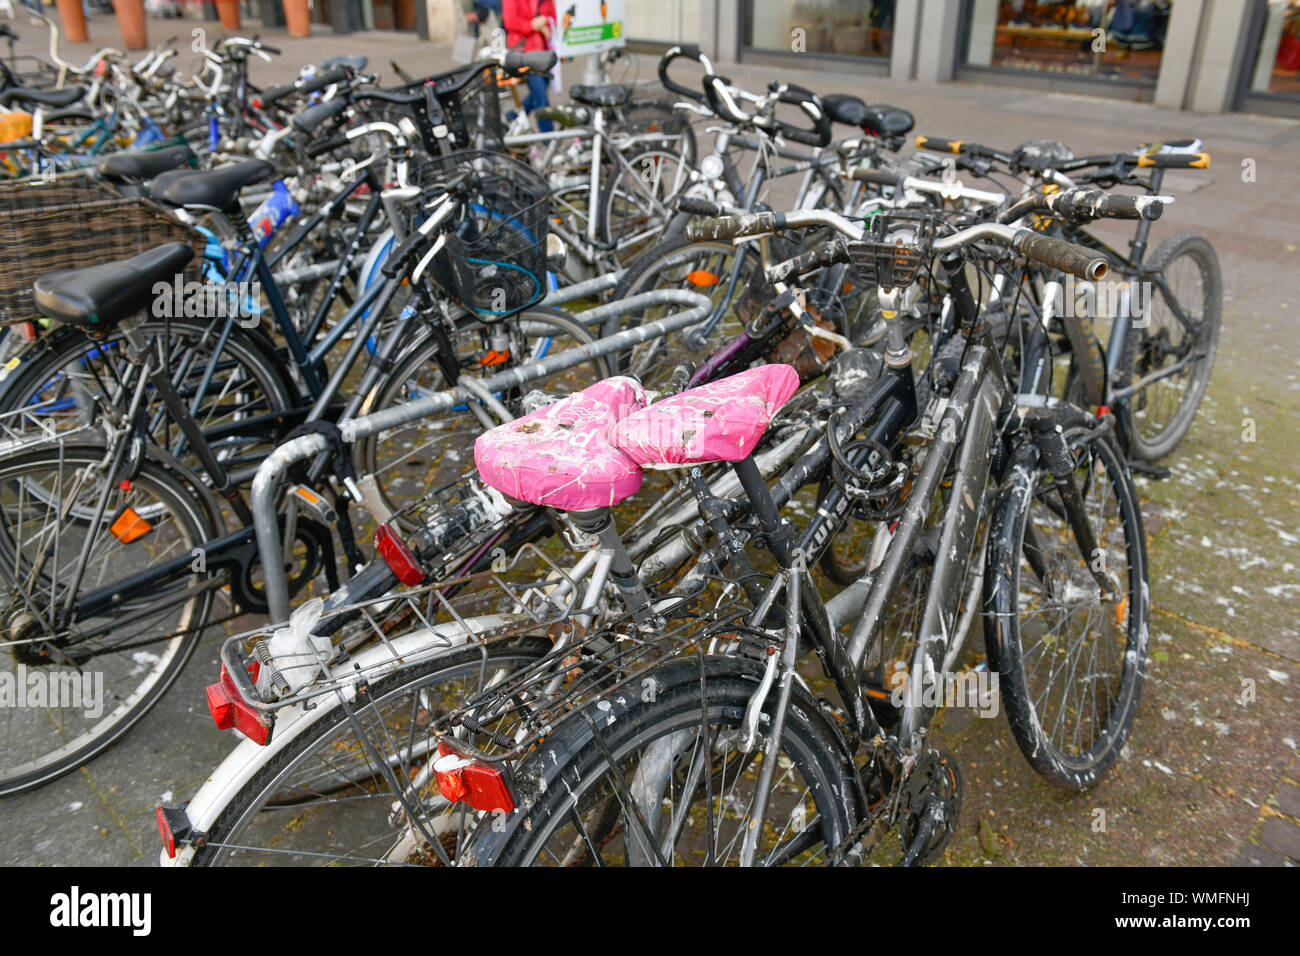 Fahrraeder, Ernst-August-Platz, Hannover, Niedersachsen, Deutschland Stock Photo